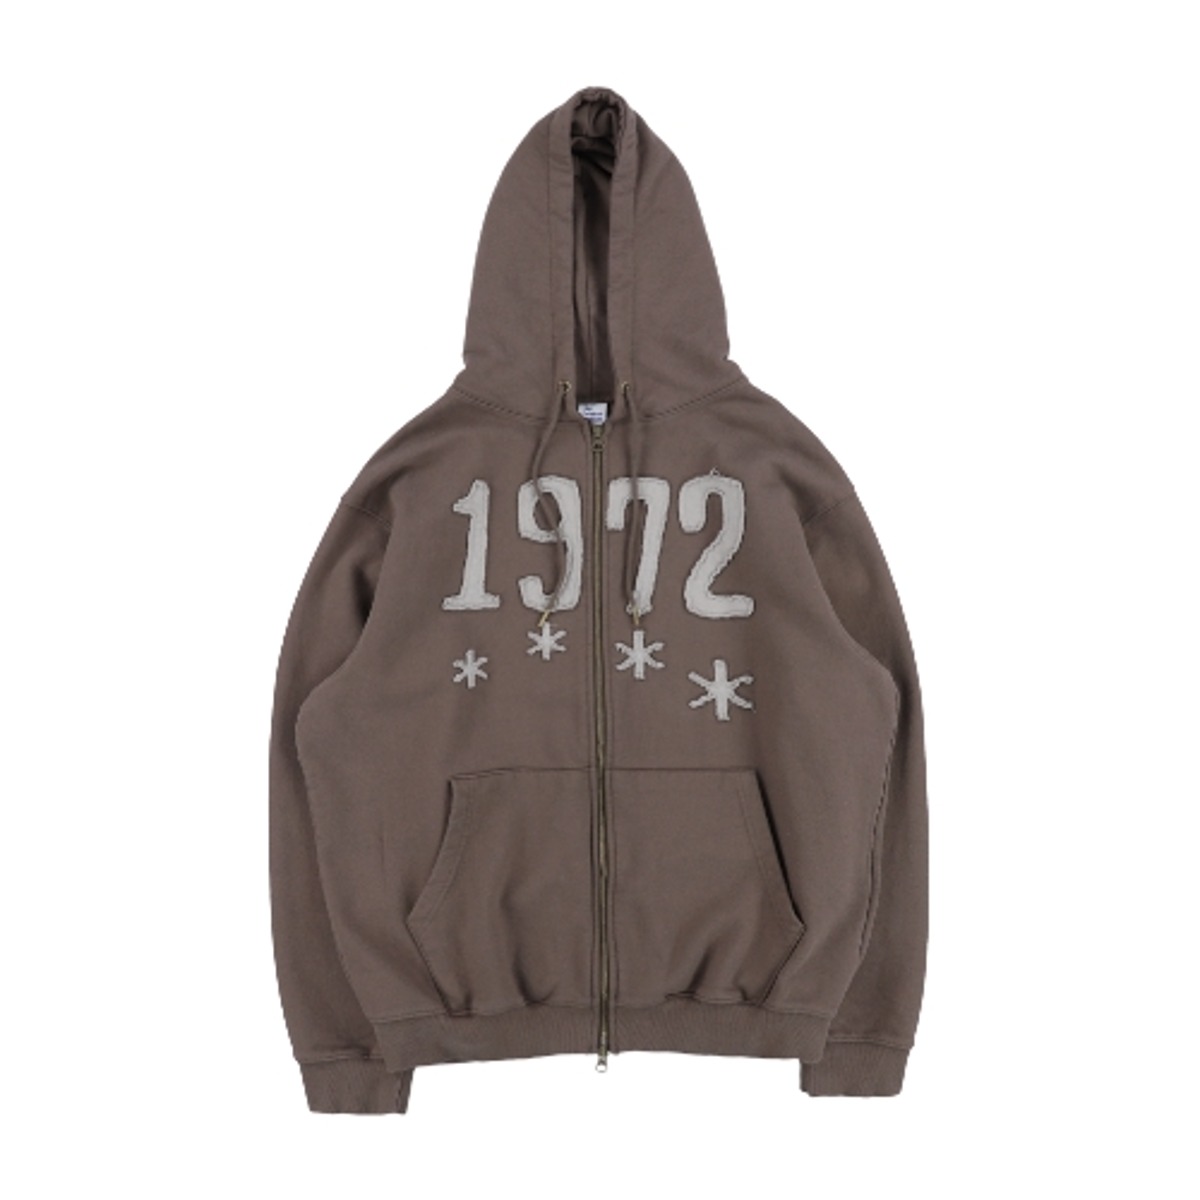 TCM 1972 hooded zip-up (dark brown)